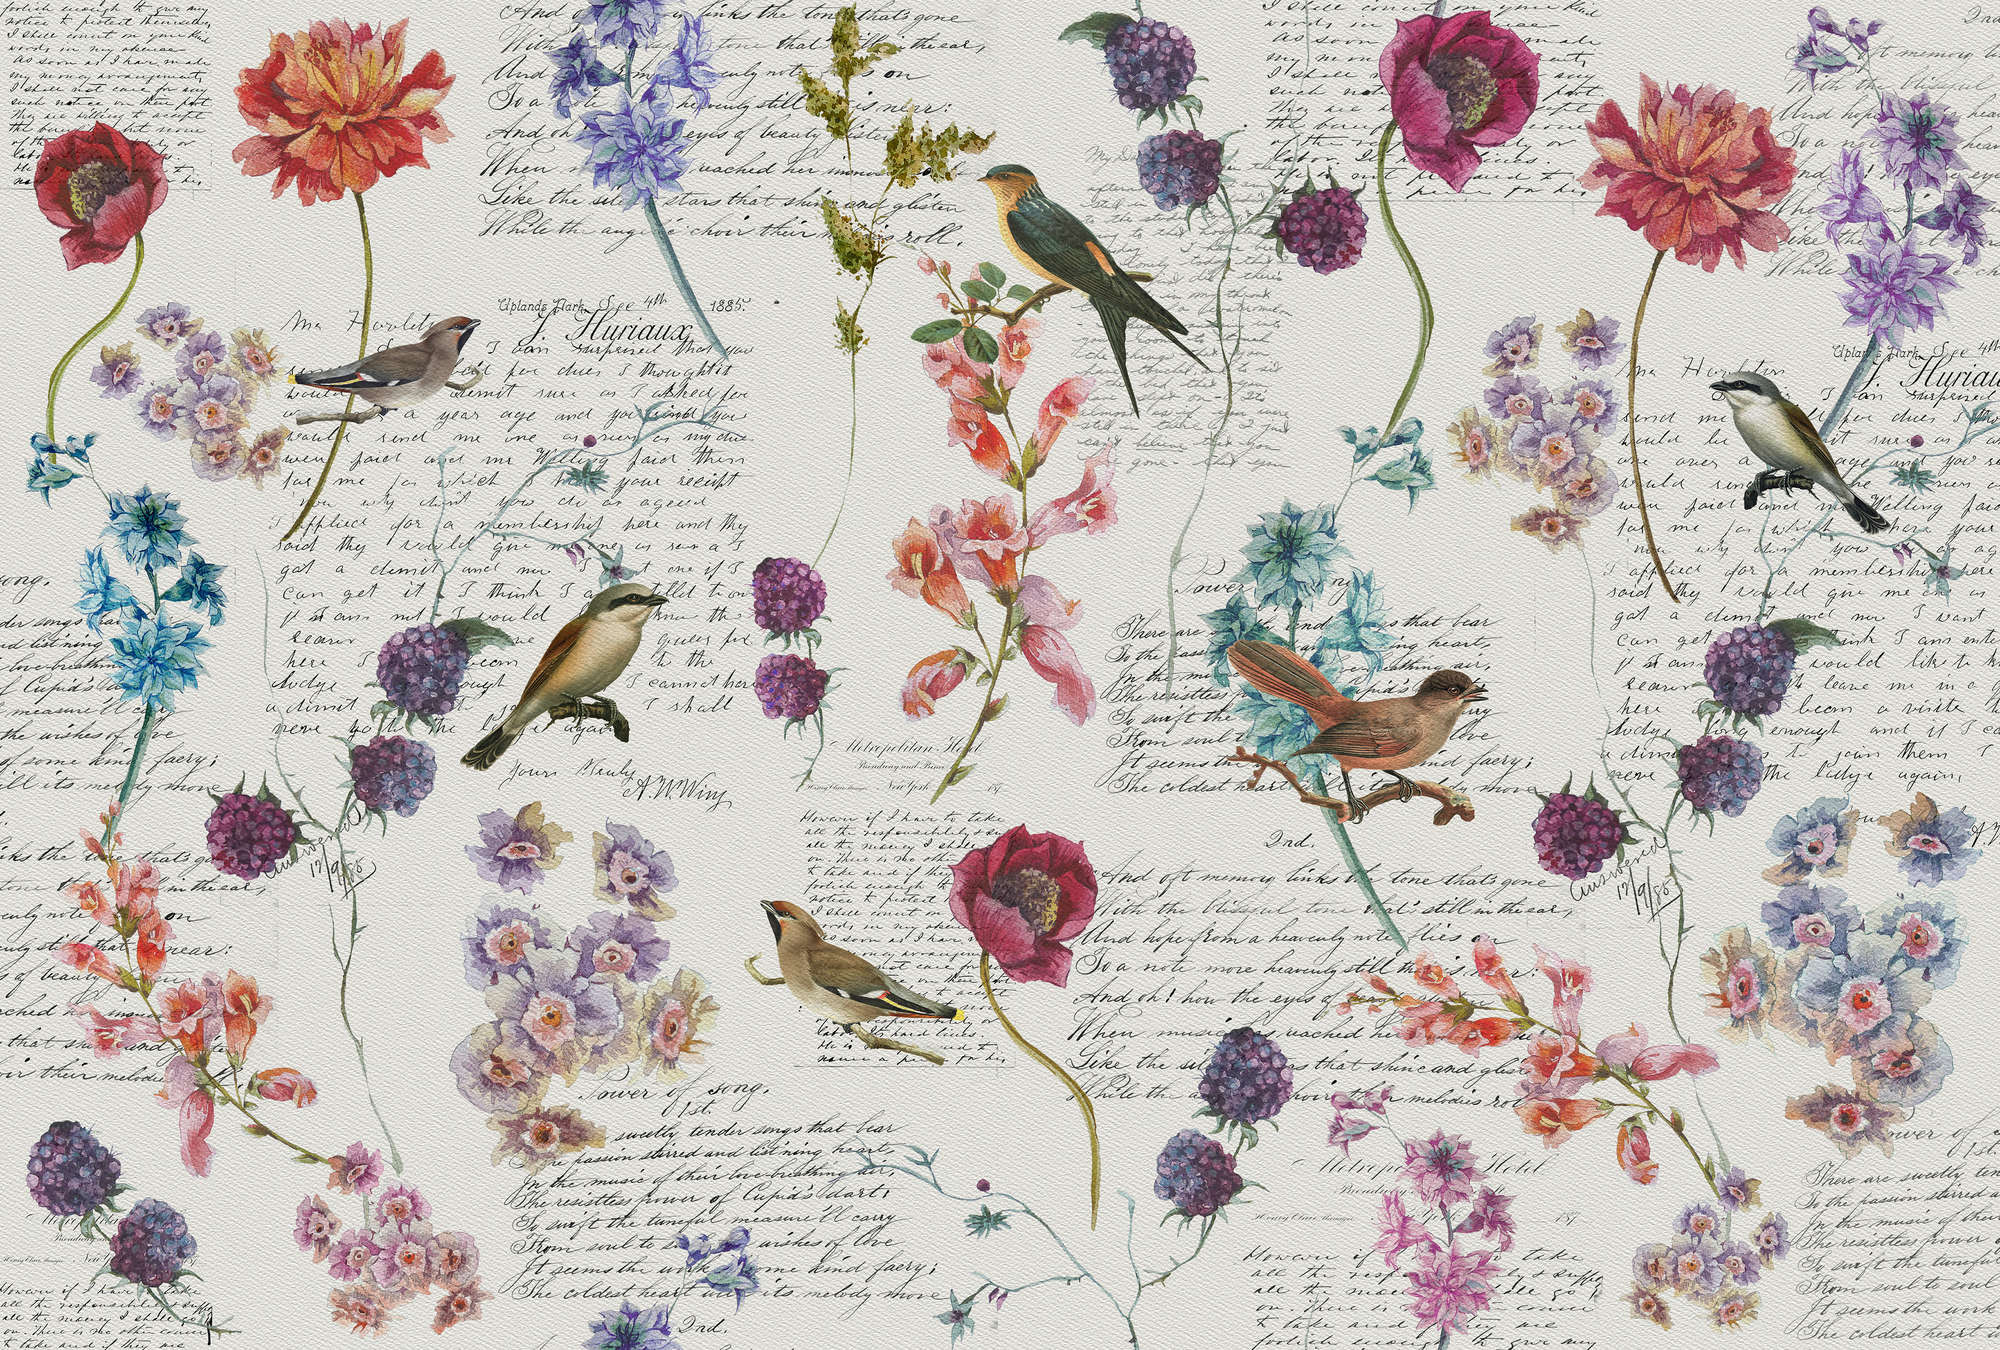             Fototapete mit Blüten & Vögeln im Vintage-Stil – Bunt, Weiß, Blau
        